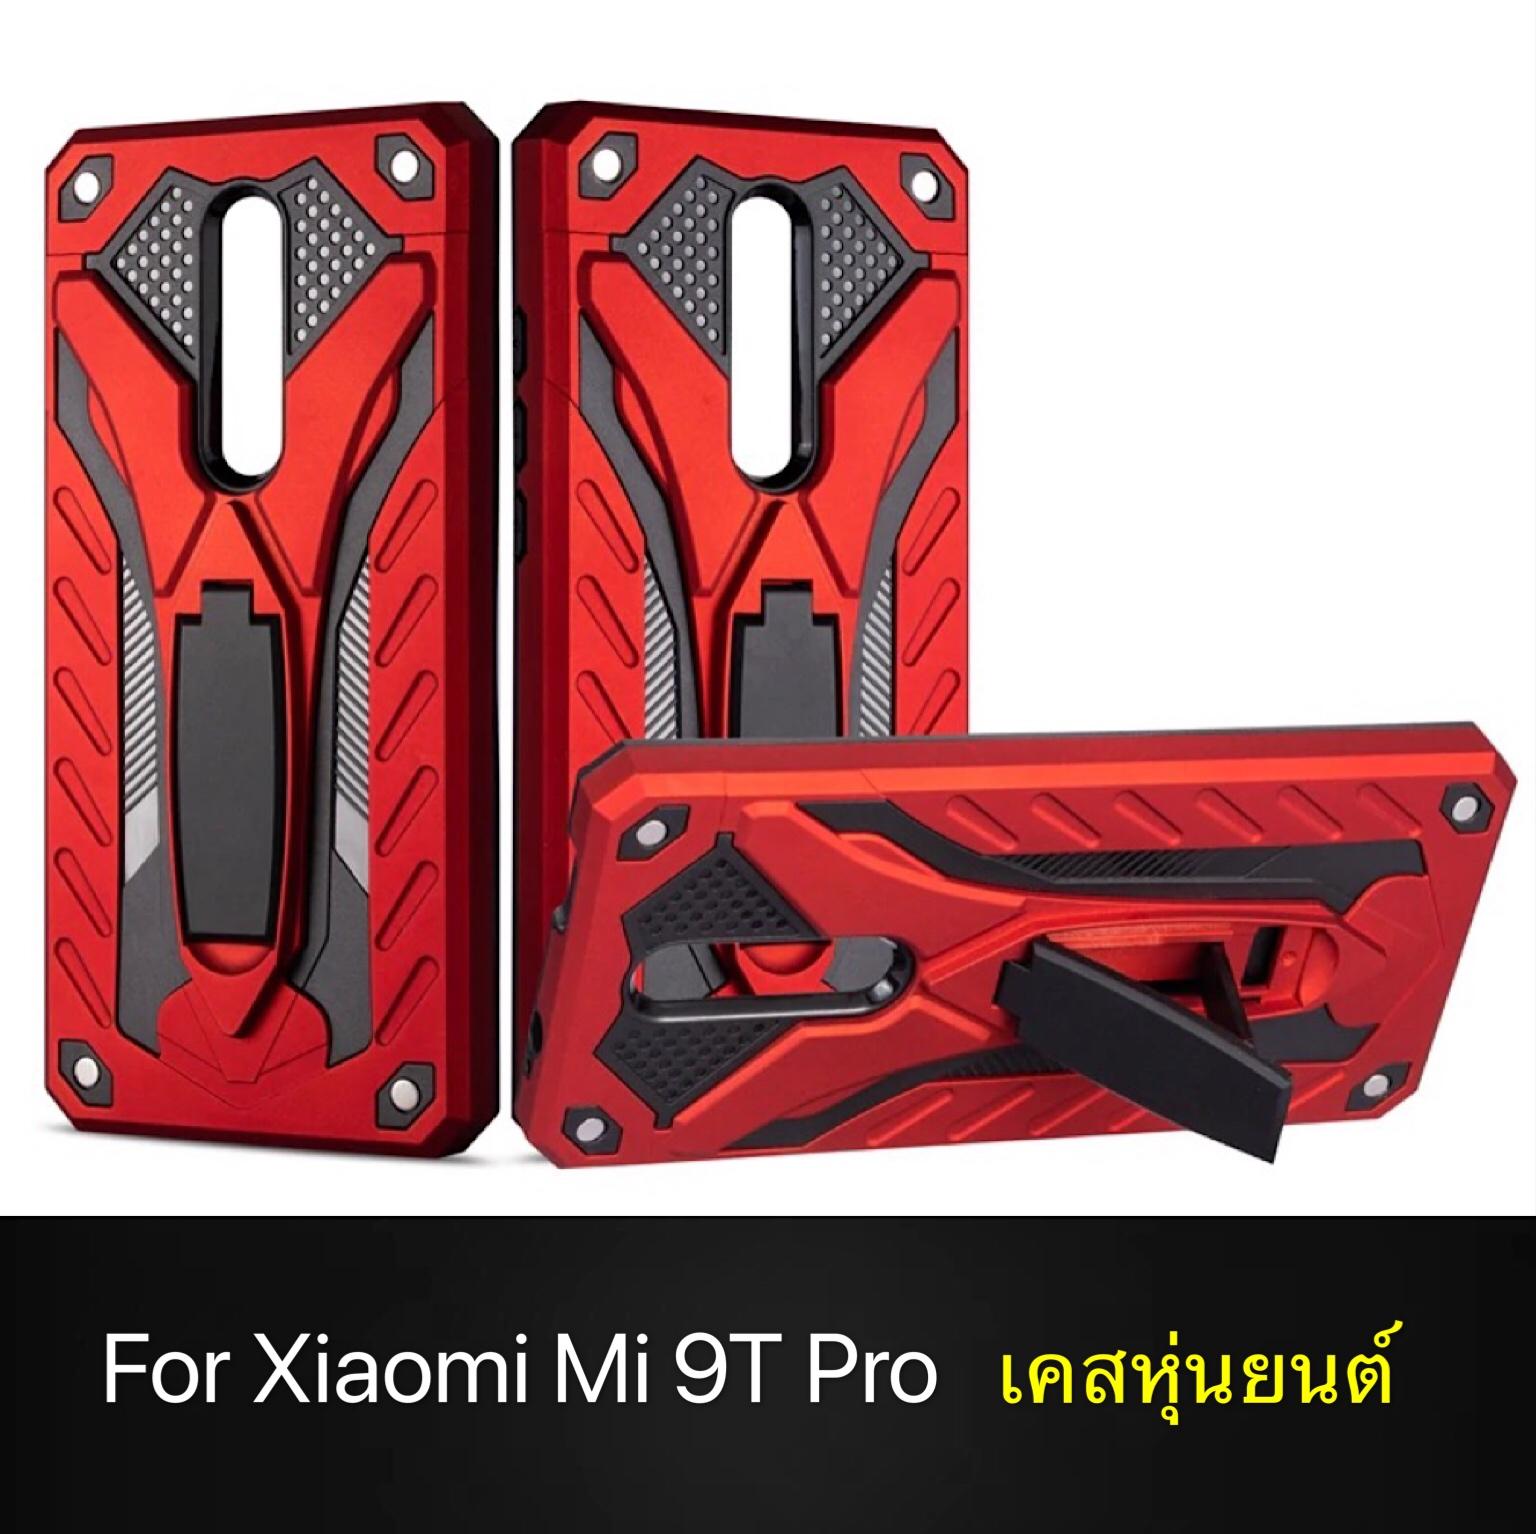 พร้อมส่งทันที !! Case Xiaomi Mi 9T Pro เคสเสียวหมี่ Mi 9TPro เคสหุ่นยนต์ เคสไฮบริด มีขาตั้ง เคสกันกระแทก TPU CASE Case xiaomi mi 9t pro สินค้าใหม่